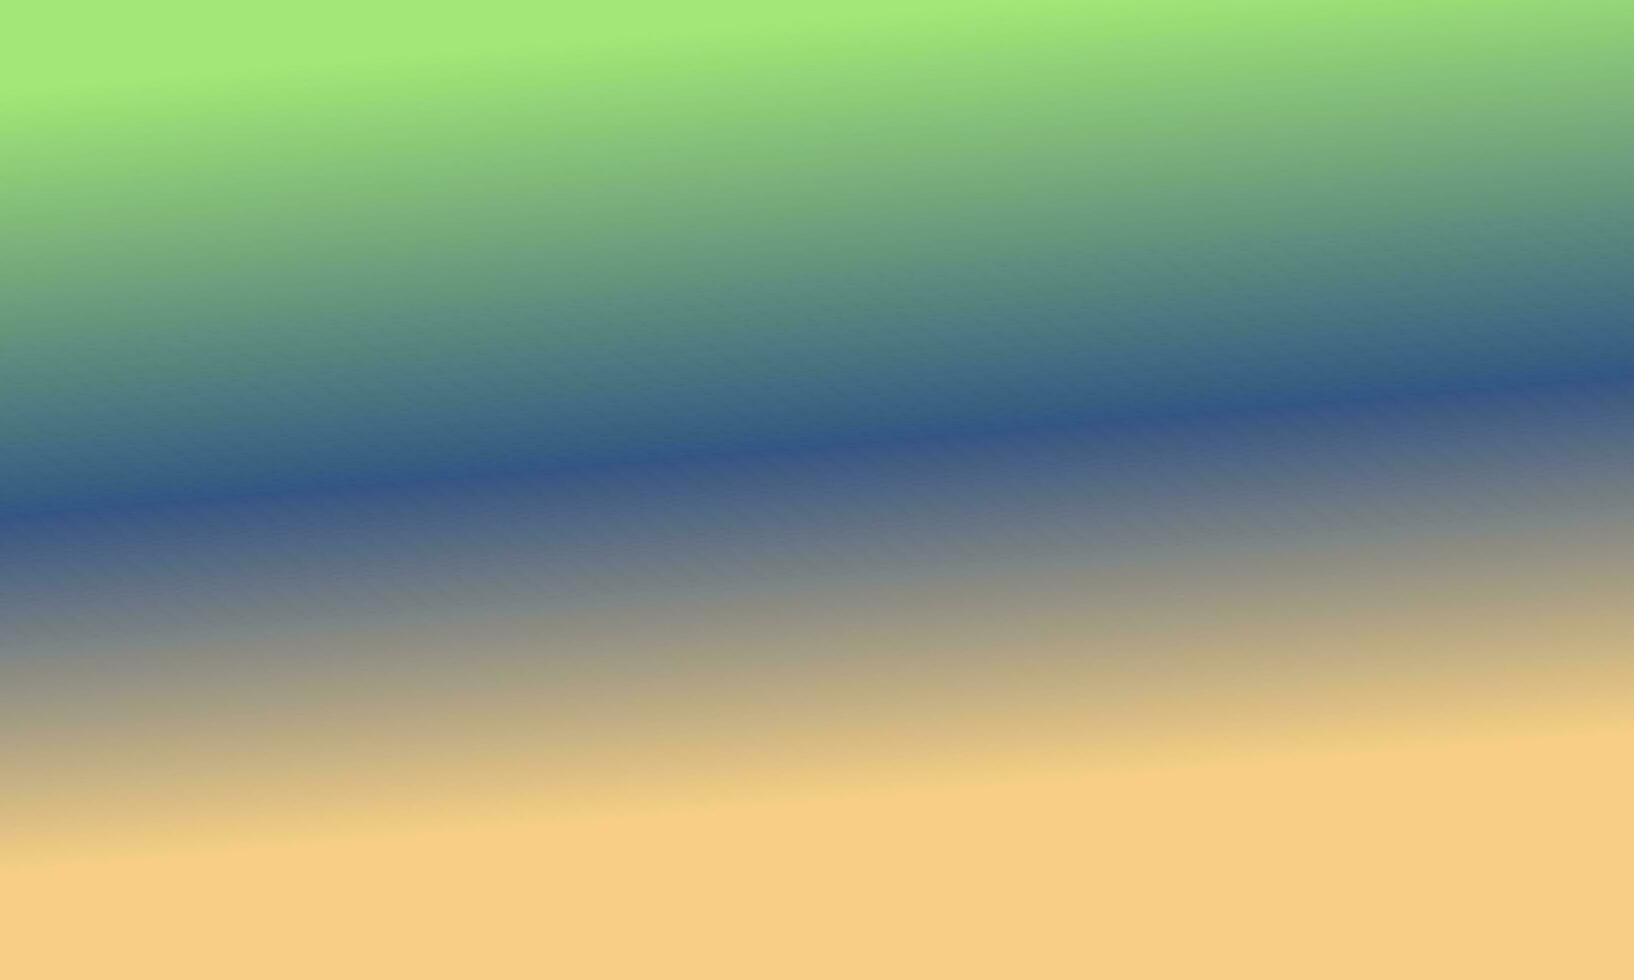 Projeto simples marinha azul, pêssego e verde gradiente cor ilustração fundo foto